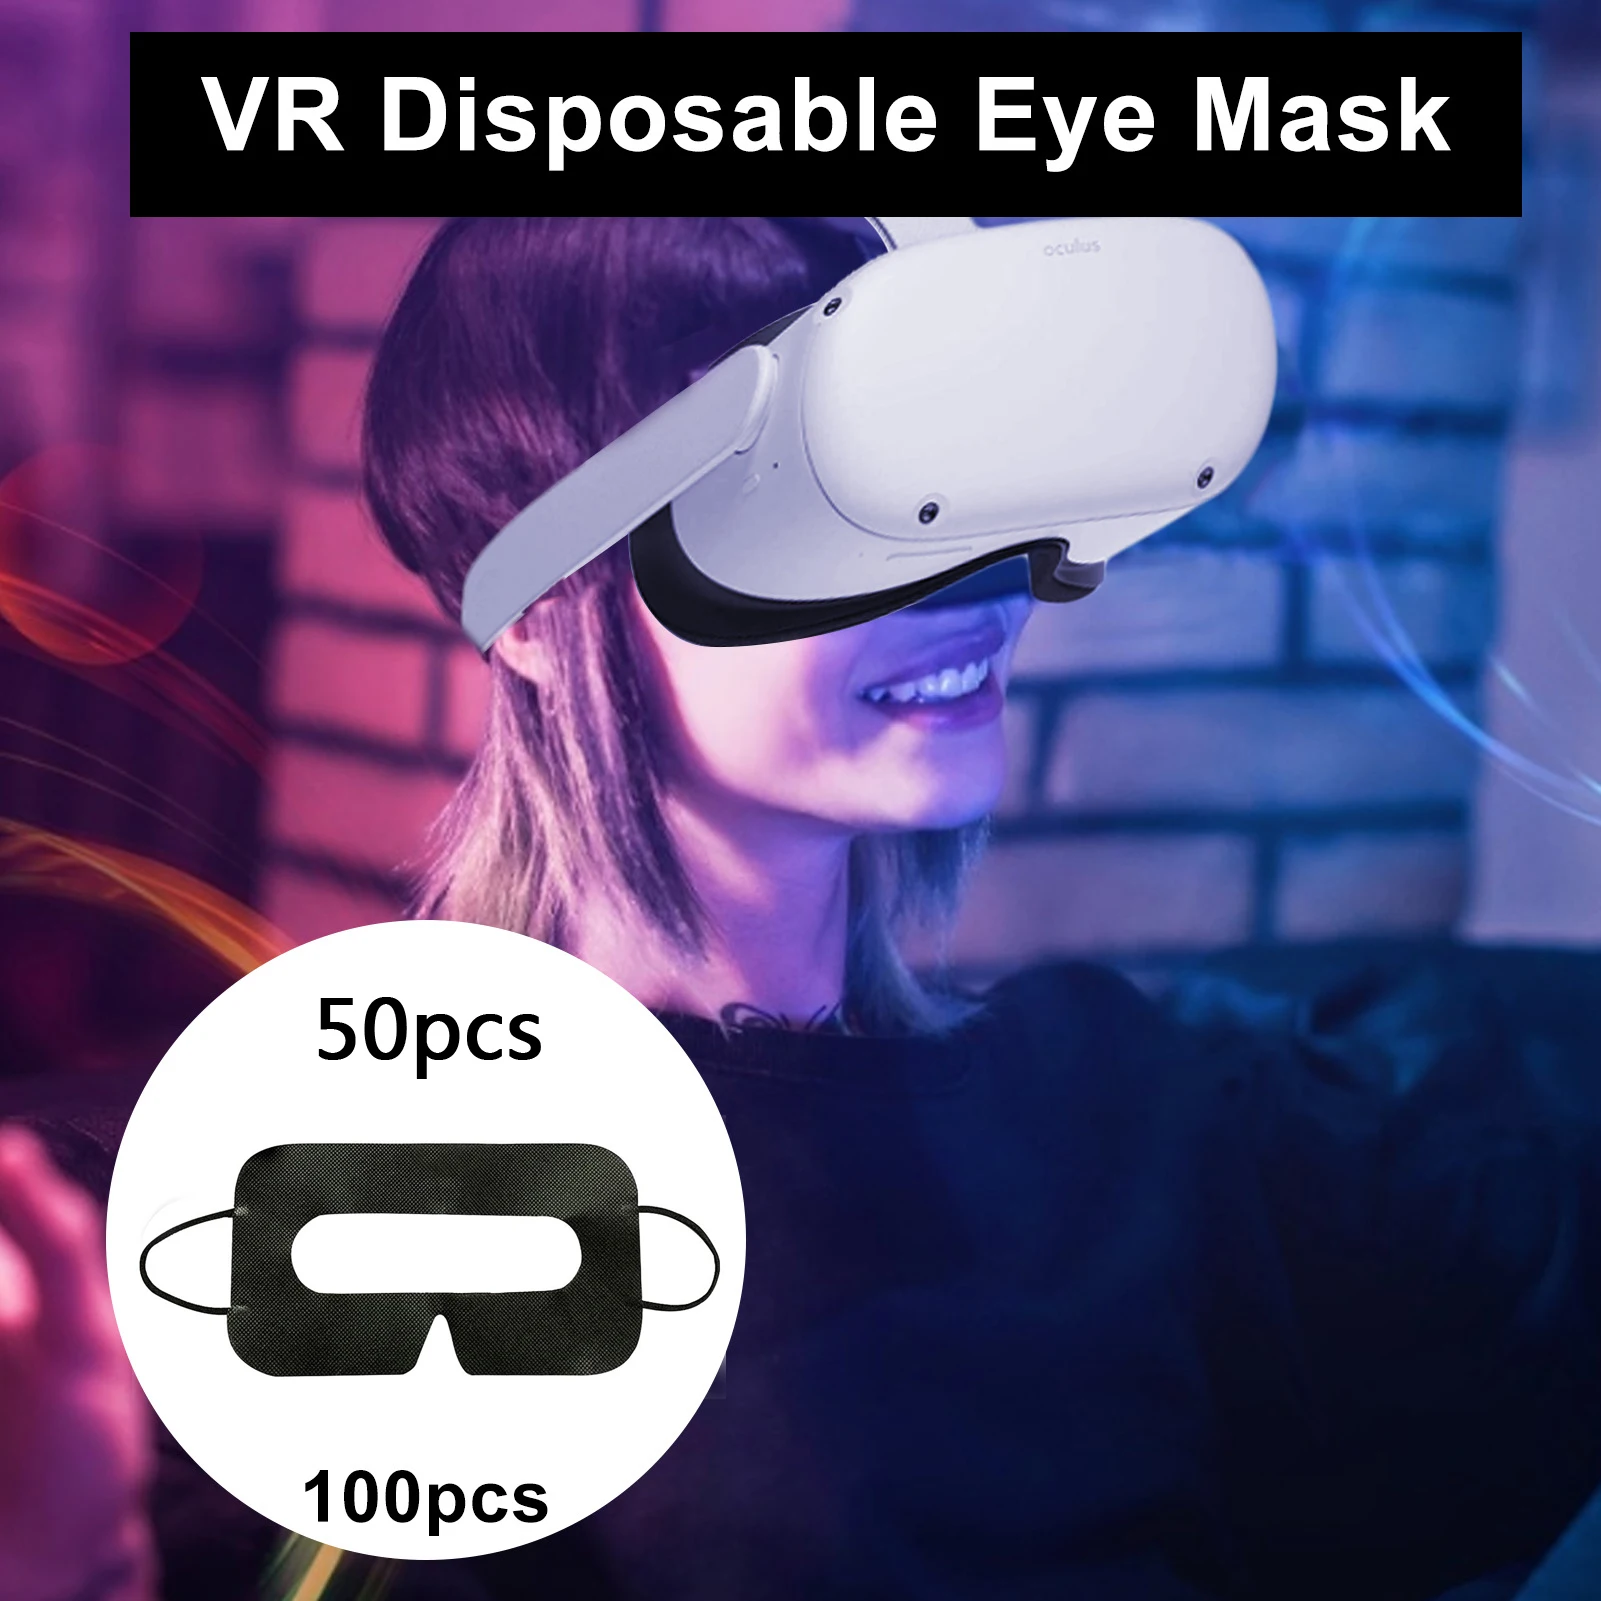 VR Masque 100 Pcs Jetable Hygiène Visage Masques Wrap Pad Patch en Papier Prévenir Les Infections des Yeux Jetable Masque Visage Masque Masque Sanitaire pour Oculus Rift CV1 